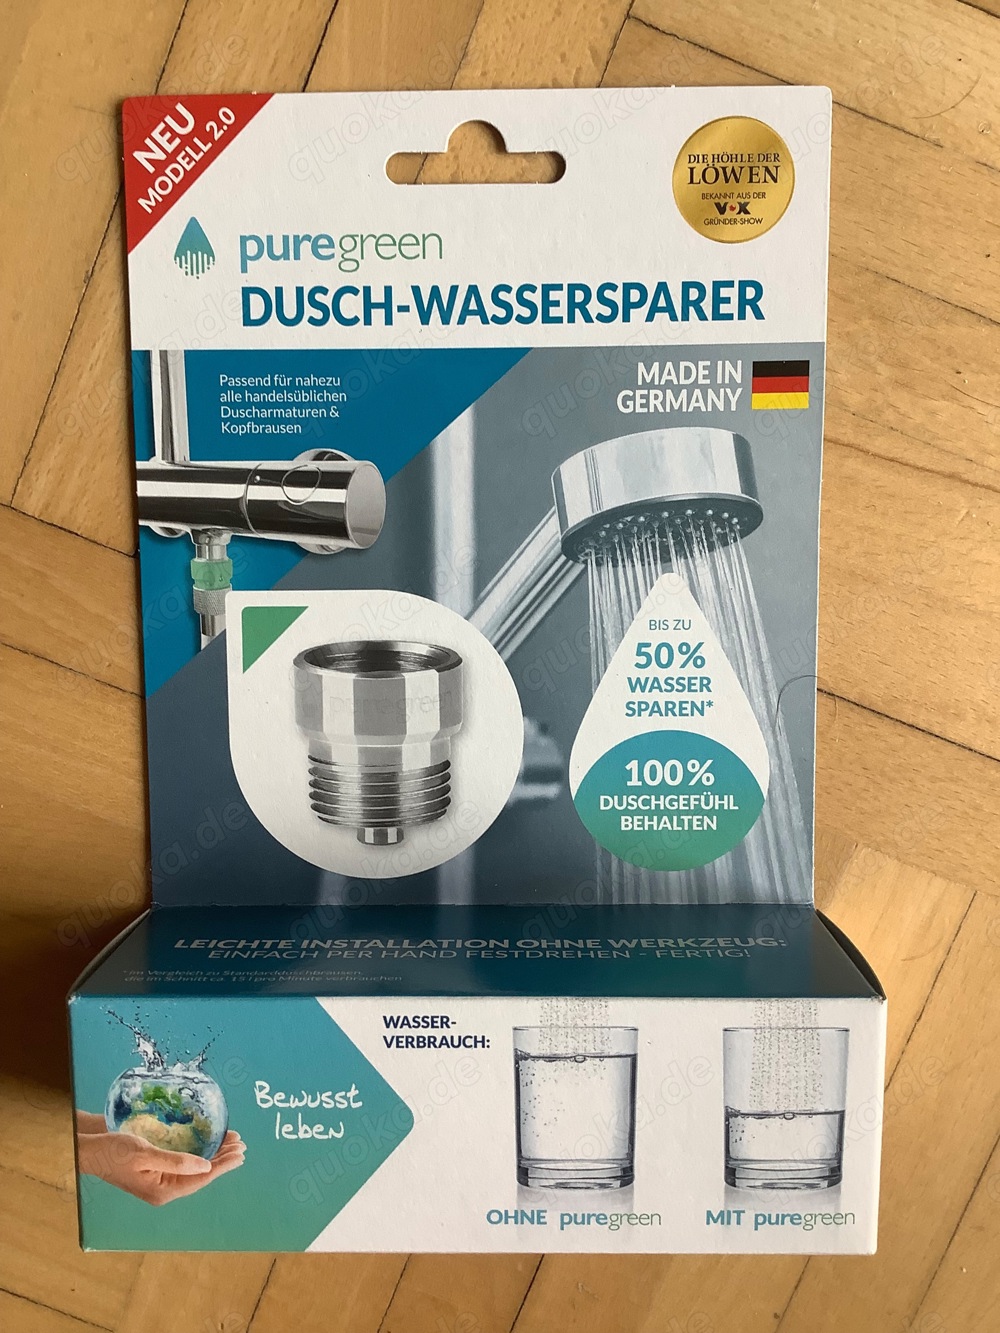 Purgreen Dusch-Wassersparer, neu